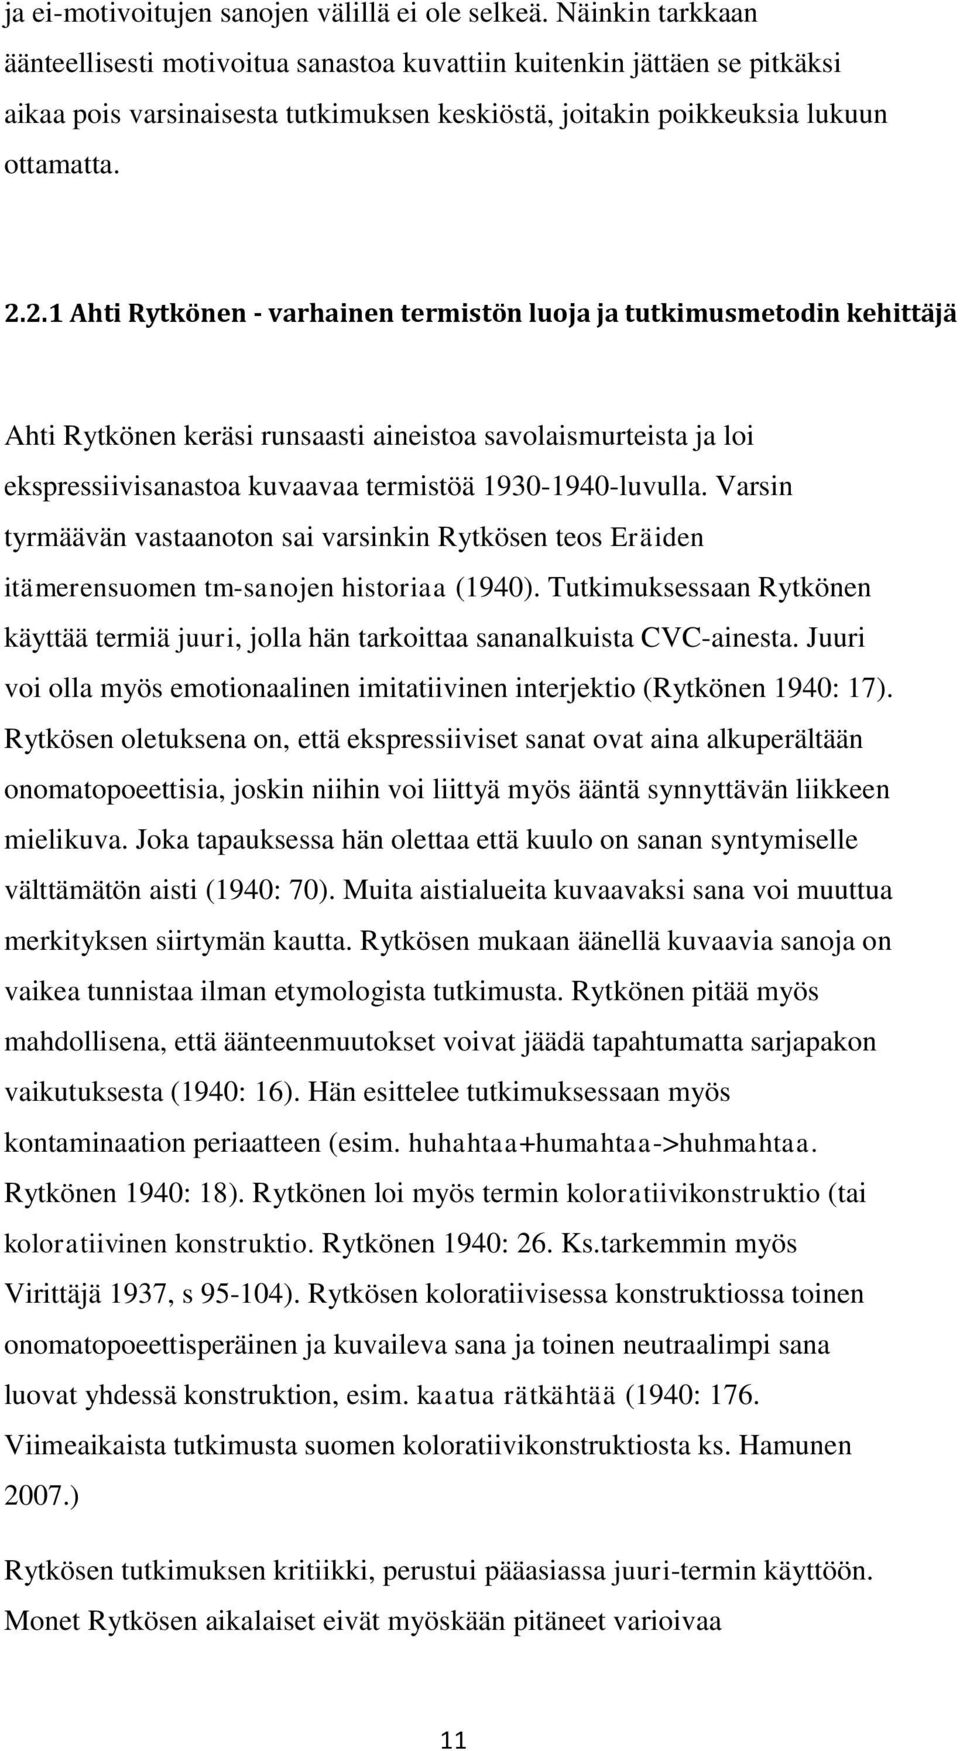 2.1 Ahti Rytkönen - varhainen termistön luoja ja tutkimusmetodin kehittäjä Ahti Rytkönen keräsi runsaasti aineistoa savolaismurteista ja loi ekspressiivisanastoa kuvaavaa termistöä 1930-1940-luvulla.